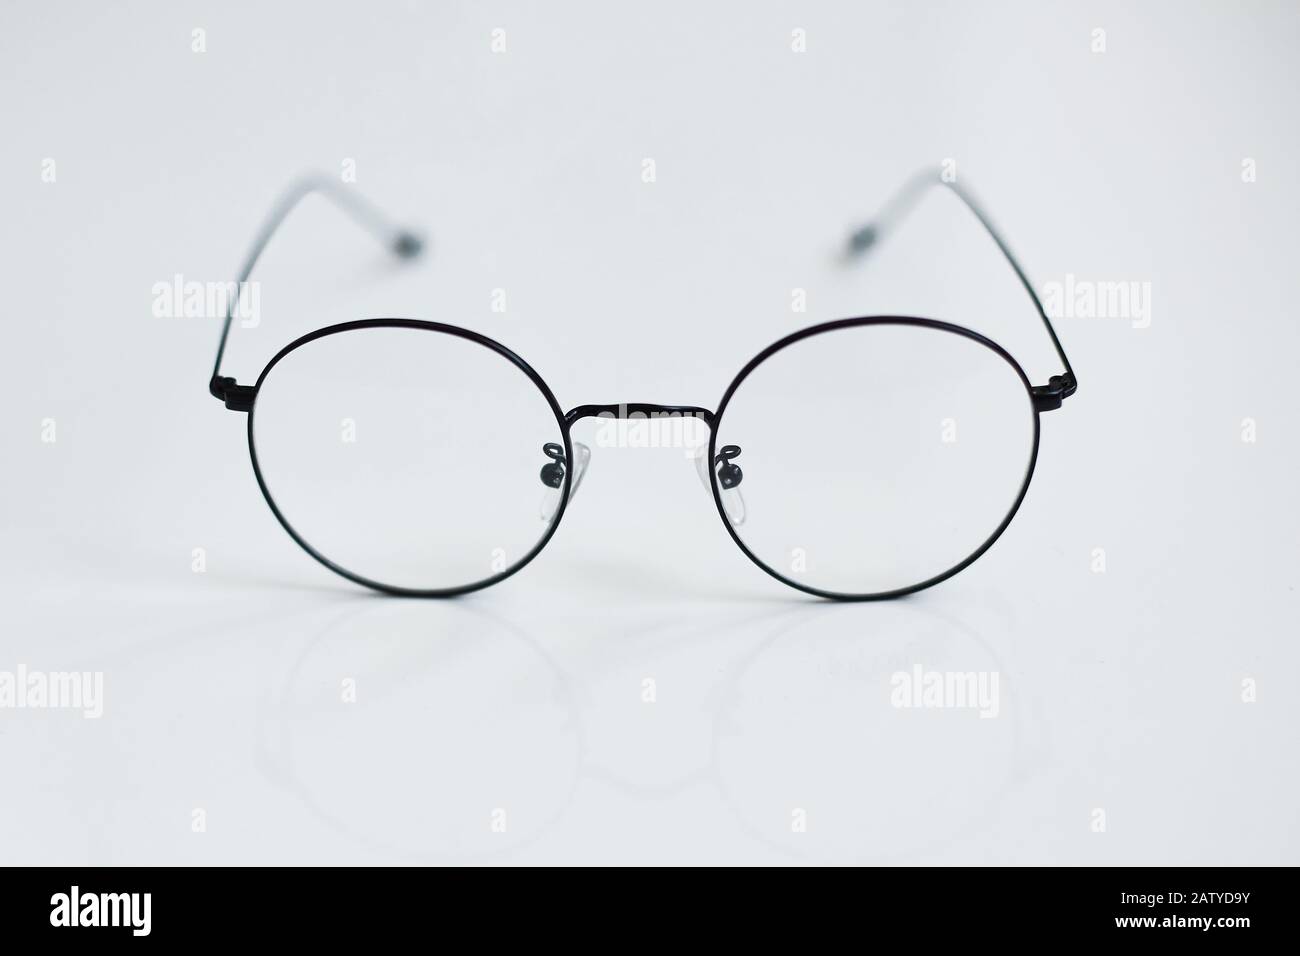 Abgerundete Vintage-Brille isoliert auf weißem Hintergrund. Werbefoto mit  abgerundeten Metallbrillen. Optisches Modekonzept. Nur Retro-Brille in Weiß  Stockfotografie - Alamy